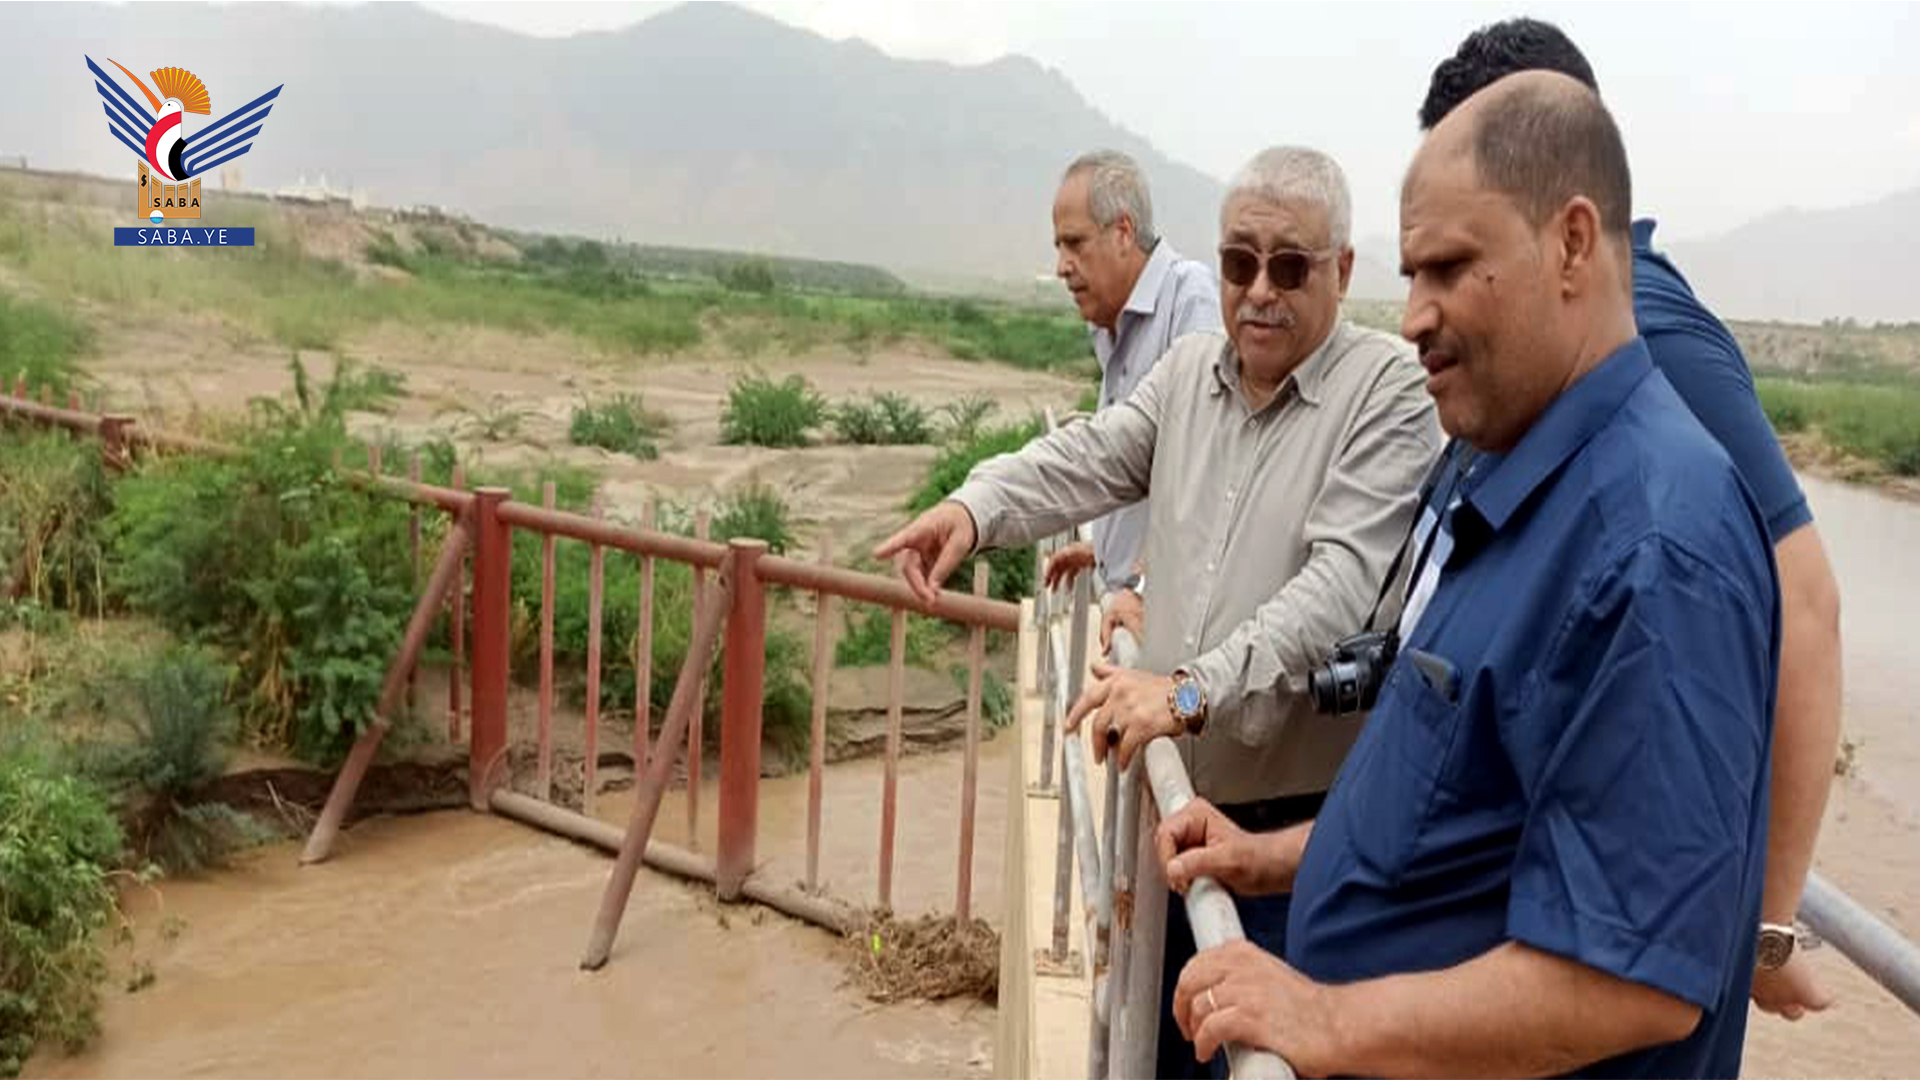   Le ministre de l'Agriculture inspecte le système d'irrigation par inondation de Wadi Siham